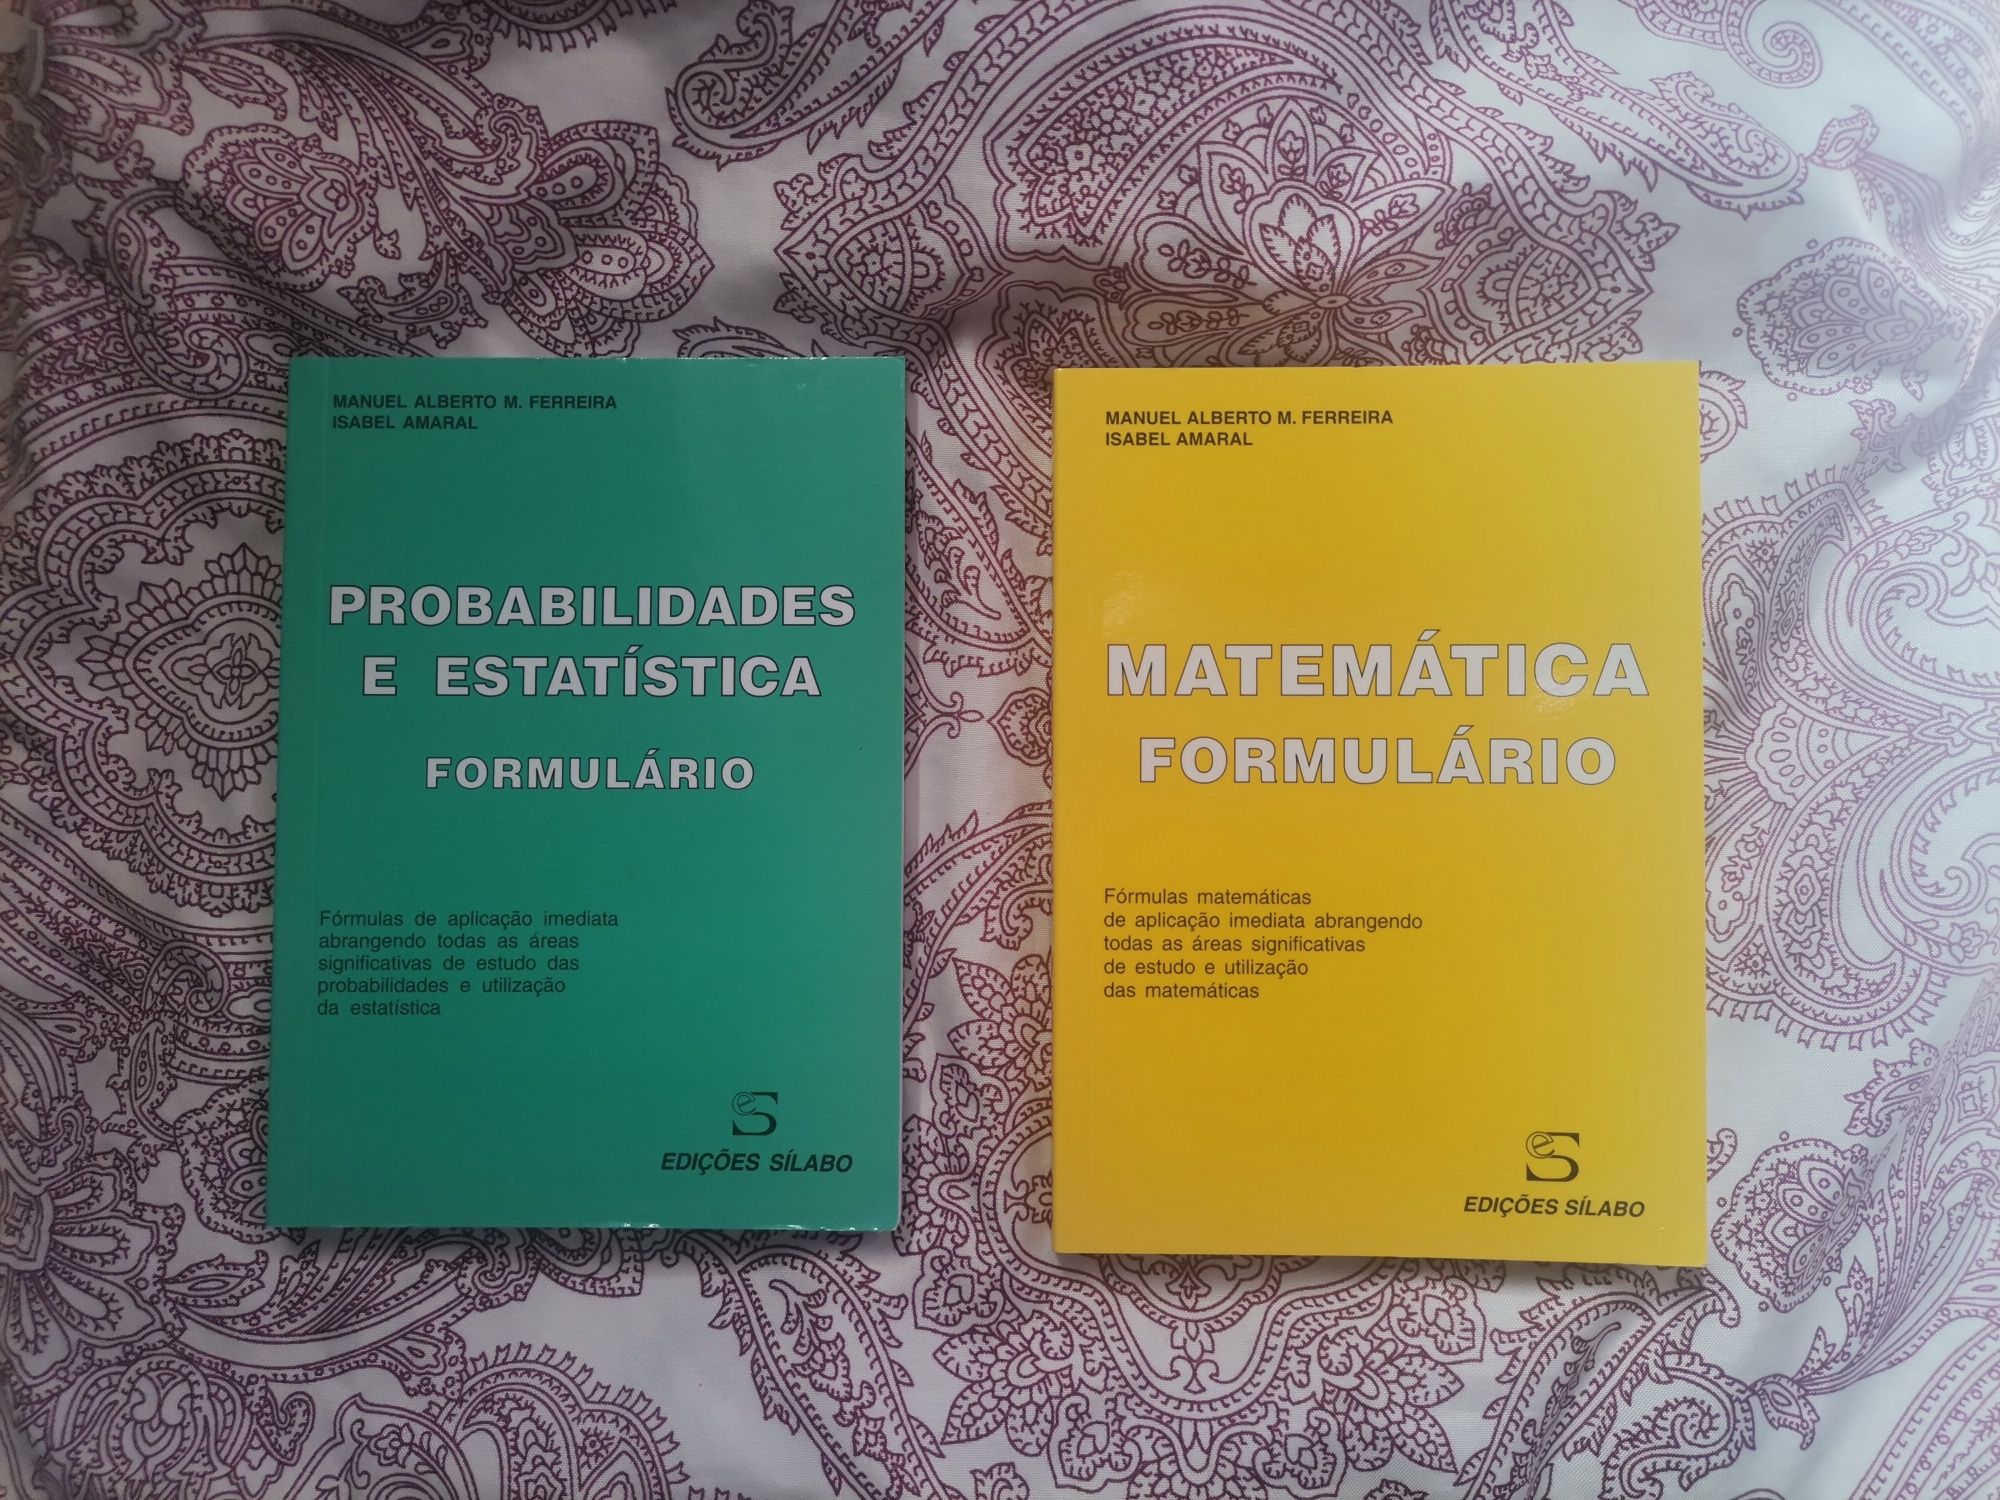 Livros formulários - Probabilidades e estatística + Matemática